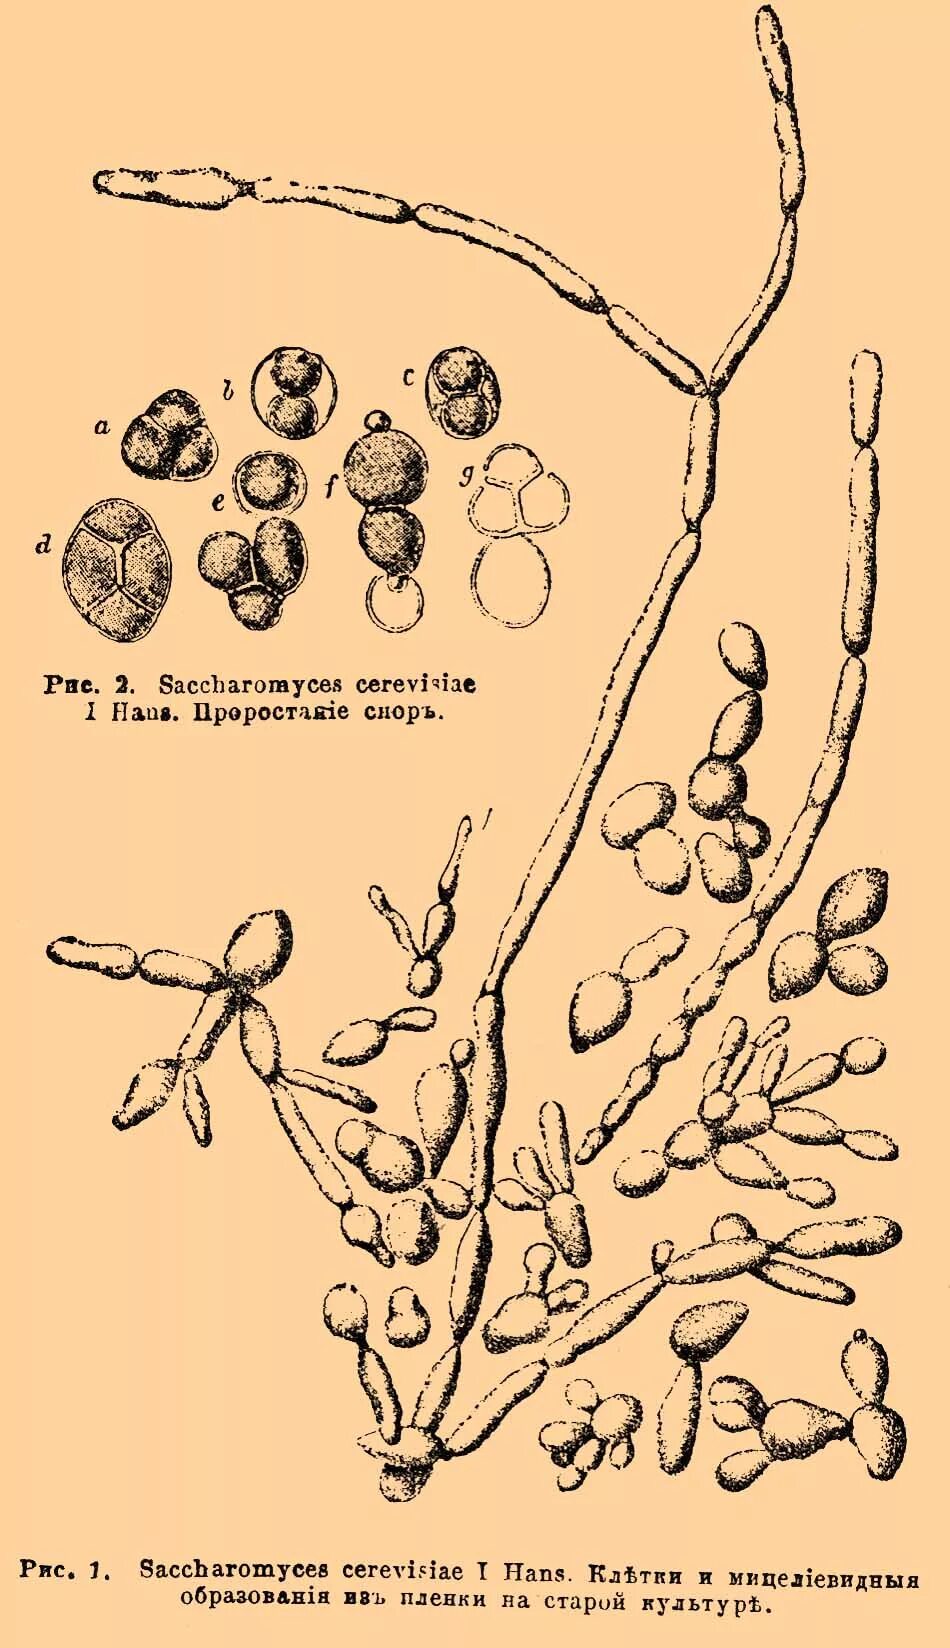 Дрожжи дикие и культурные. Saccharomyces cerevisiae рисунок. Дрожжи сахаромицес. Грибы рода Candida. Сахаромицеты серевисиае.